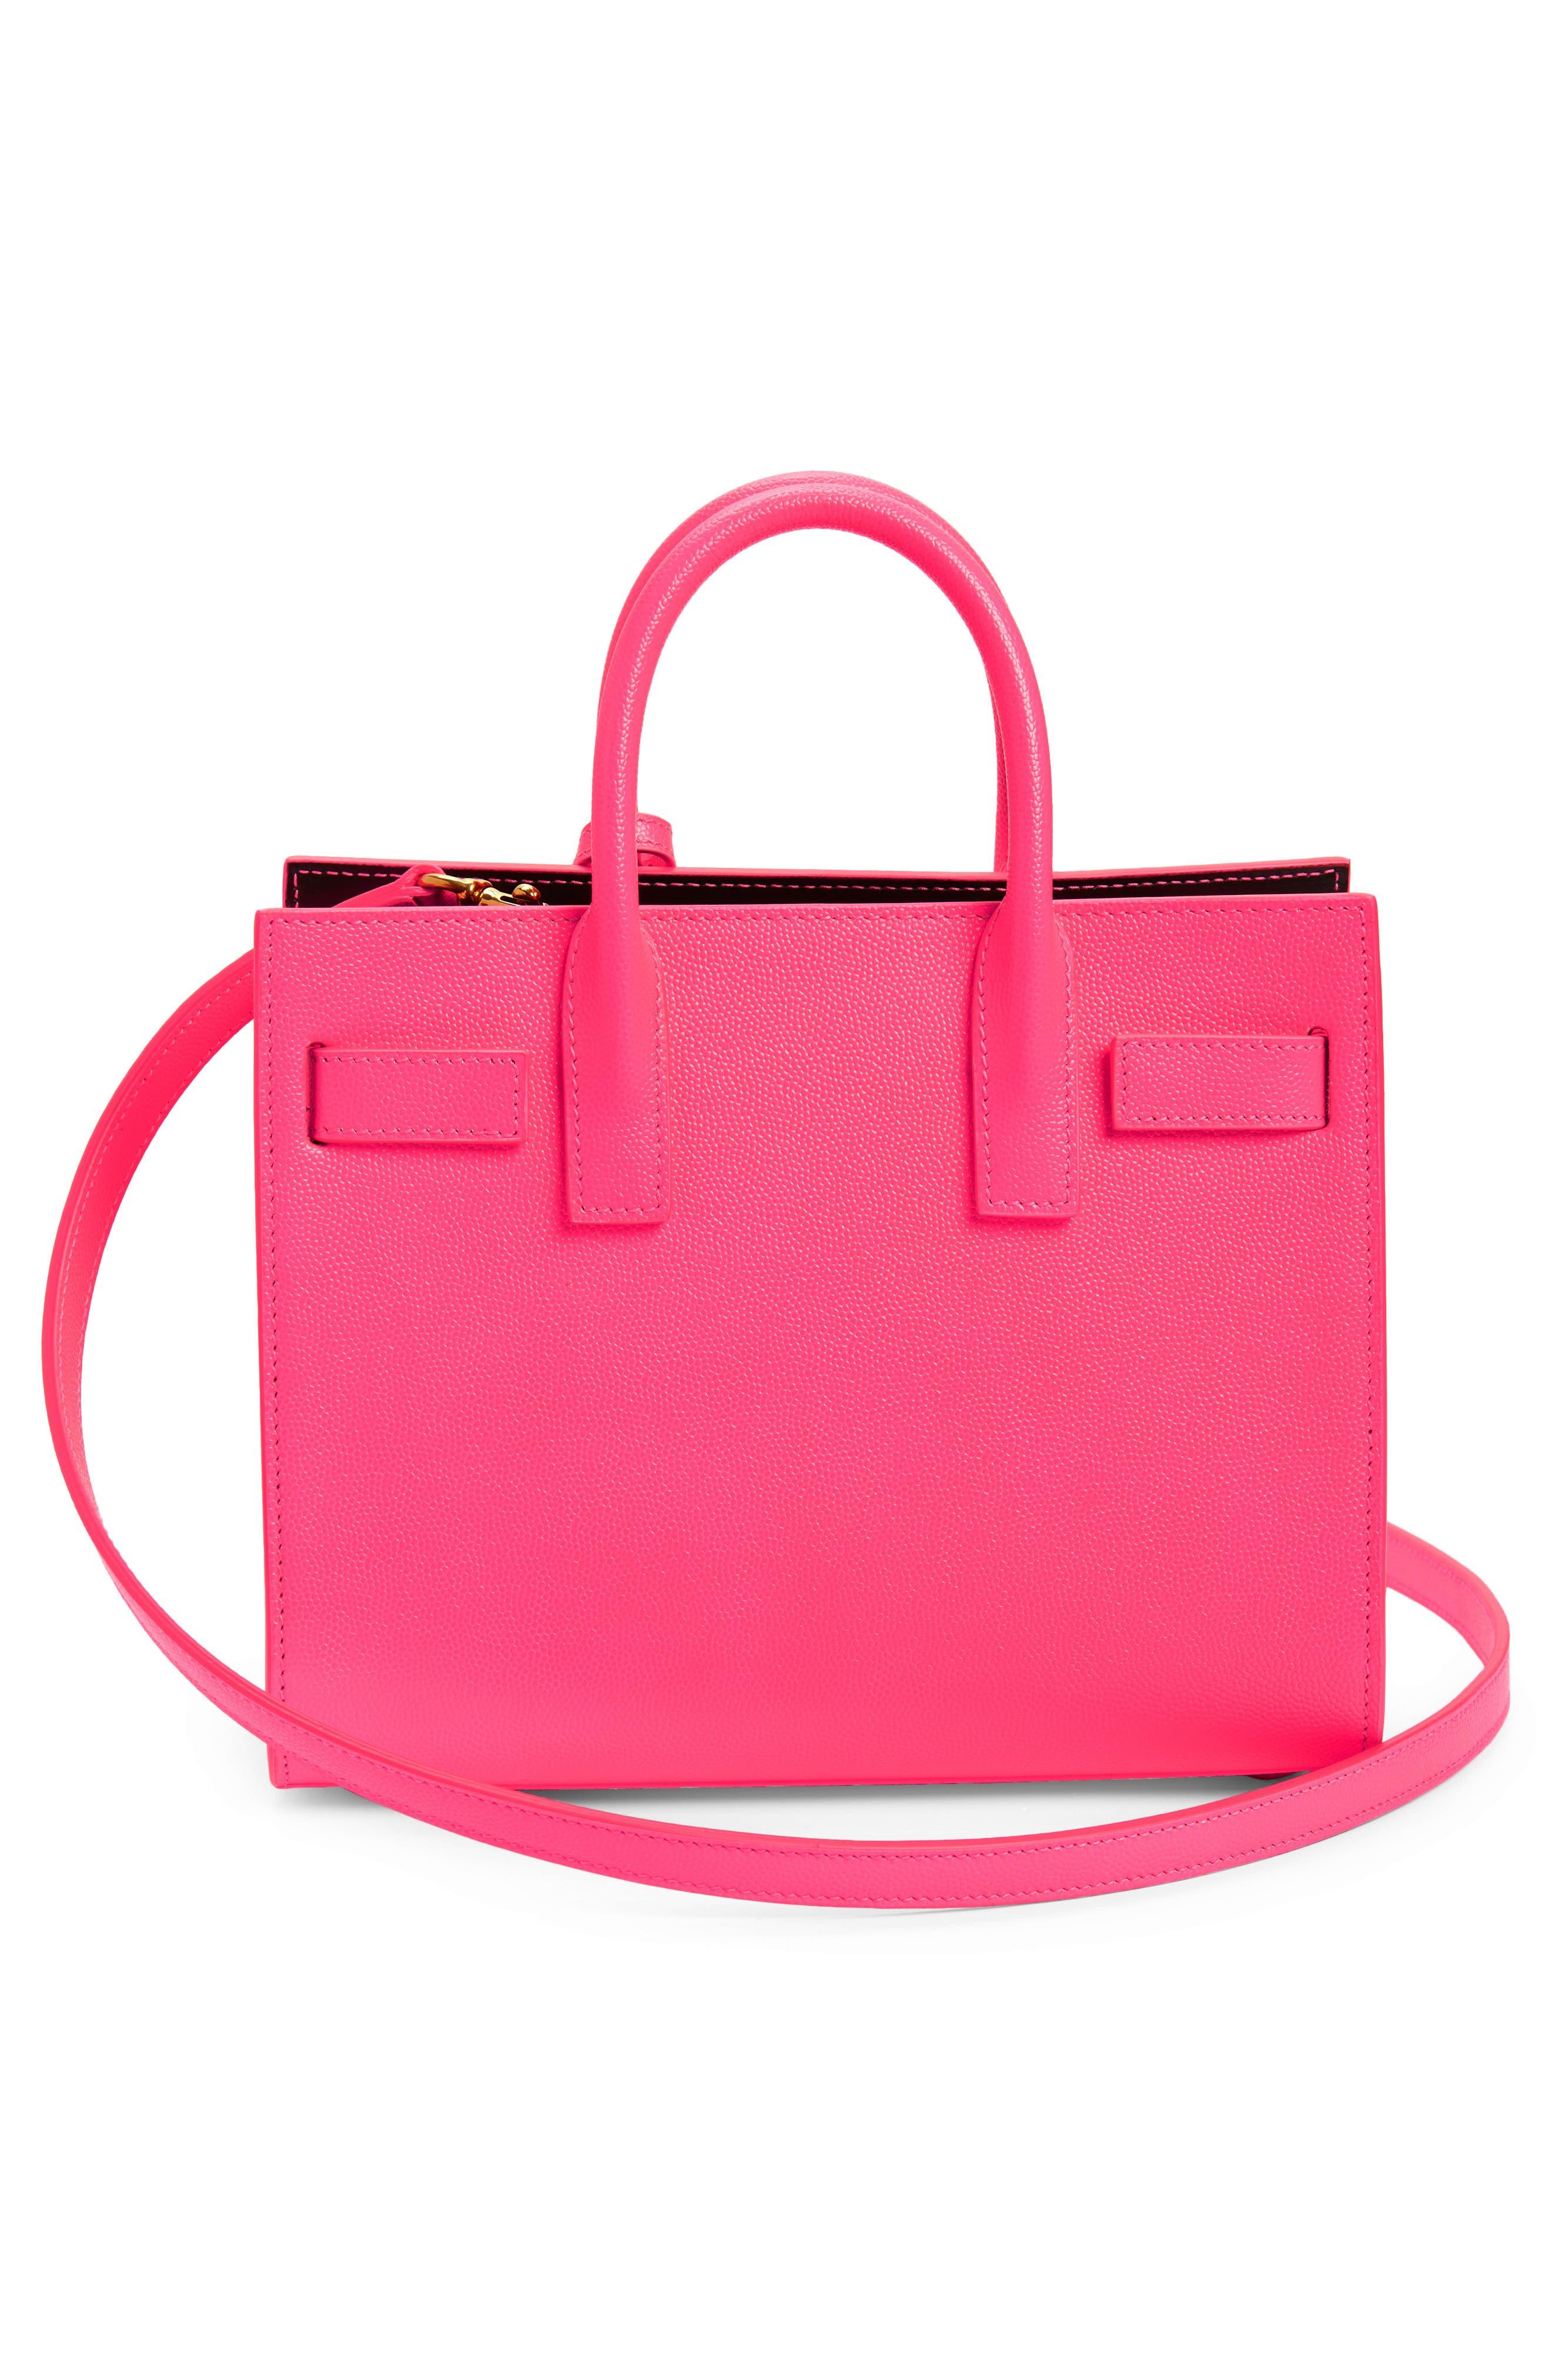 Saint Laurent Nano Sac De Jour Neon Leather Top Handle Bag in Pink